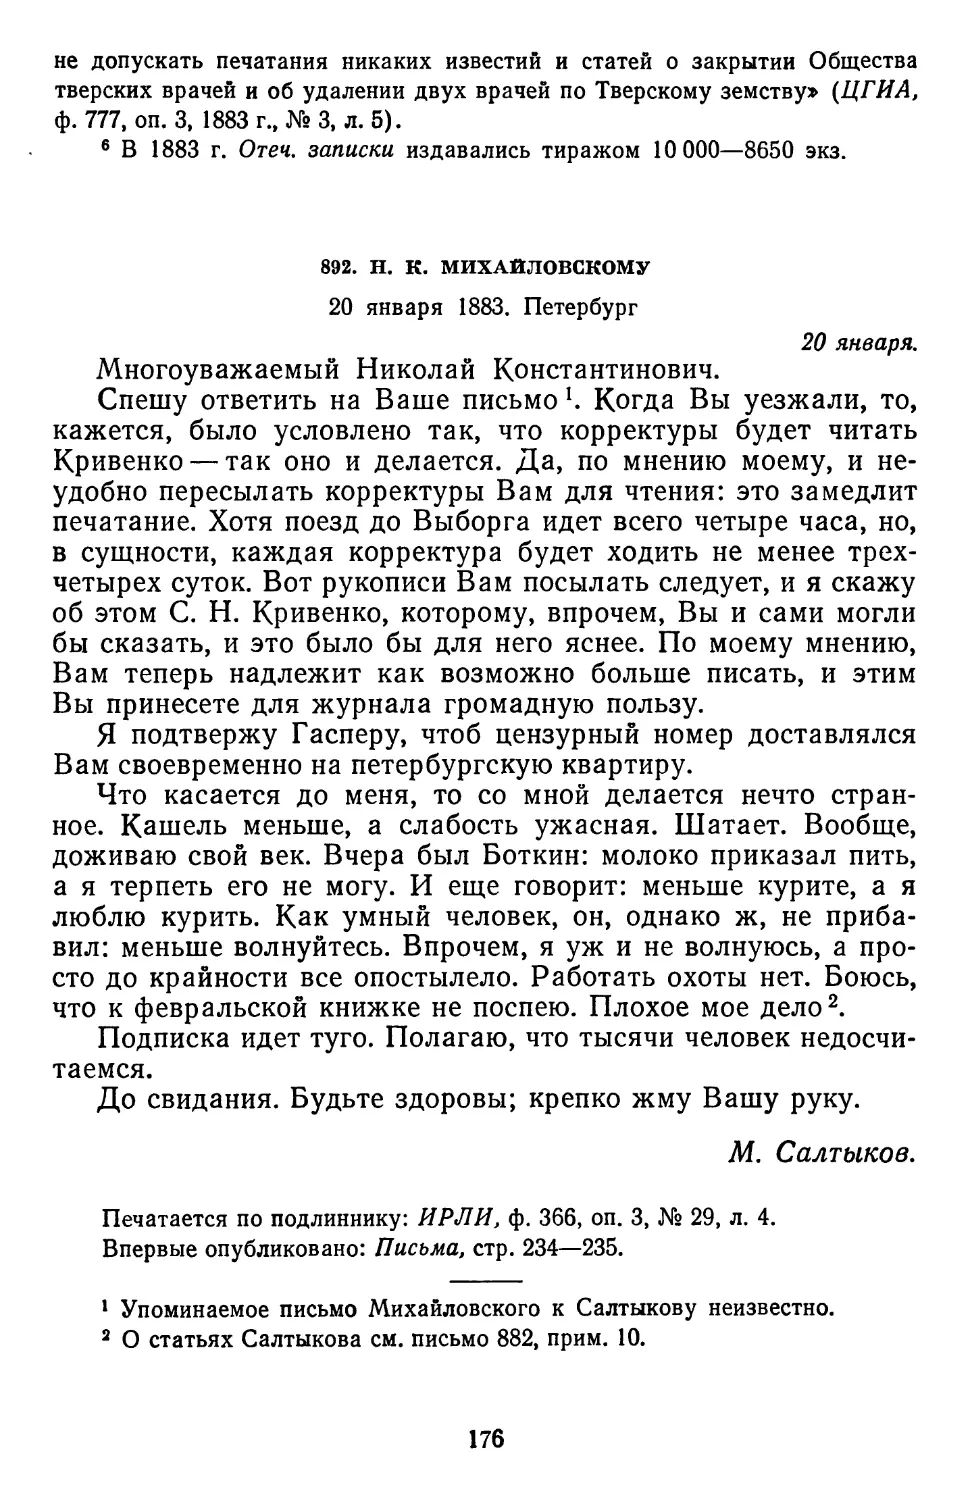 892.Н. К. Михайловскому. 20 января 1883. Петербург